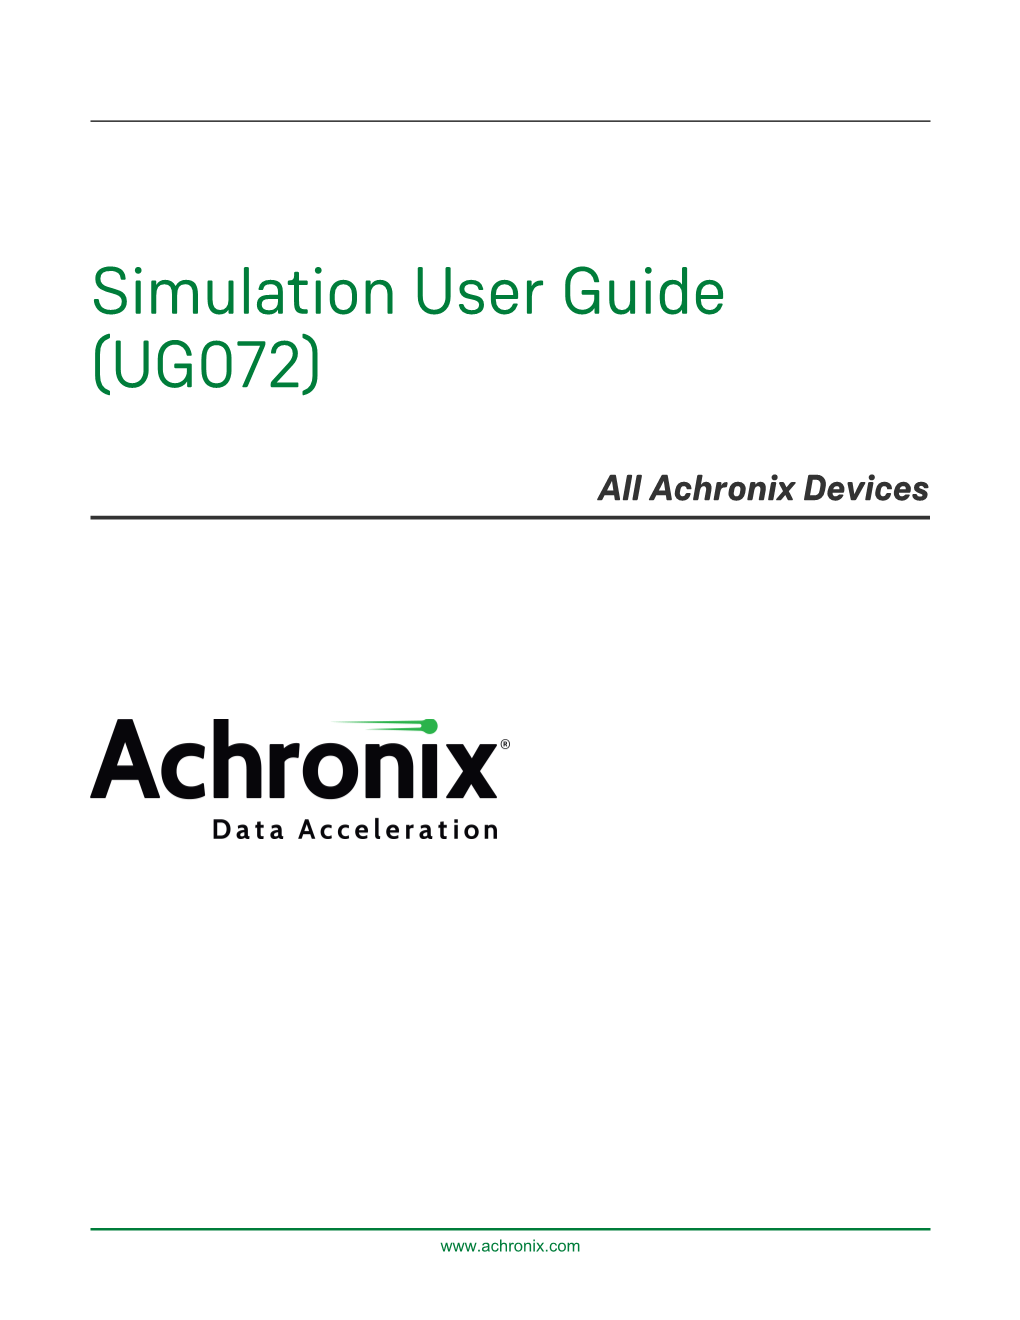 Simulation User Guide (UG072)